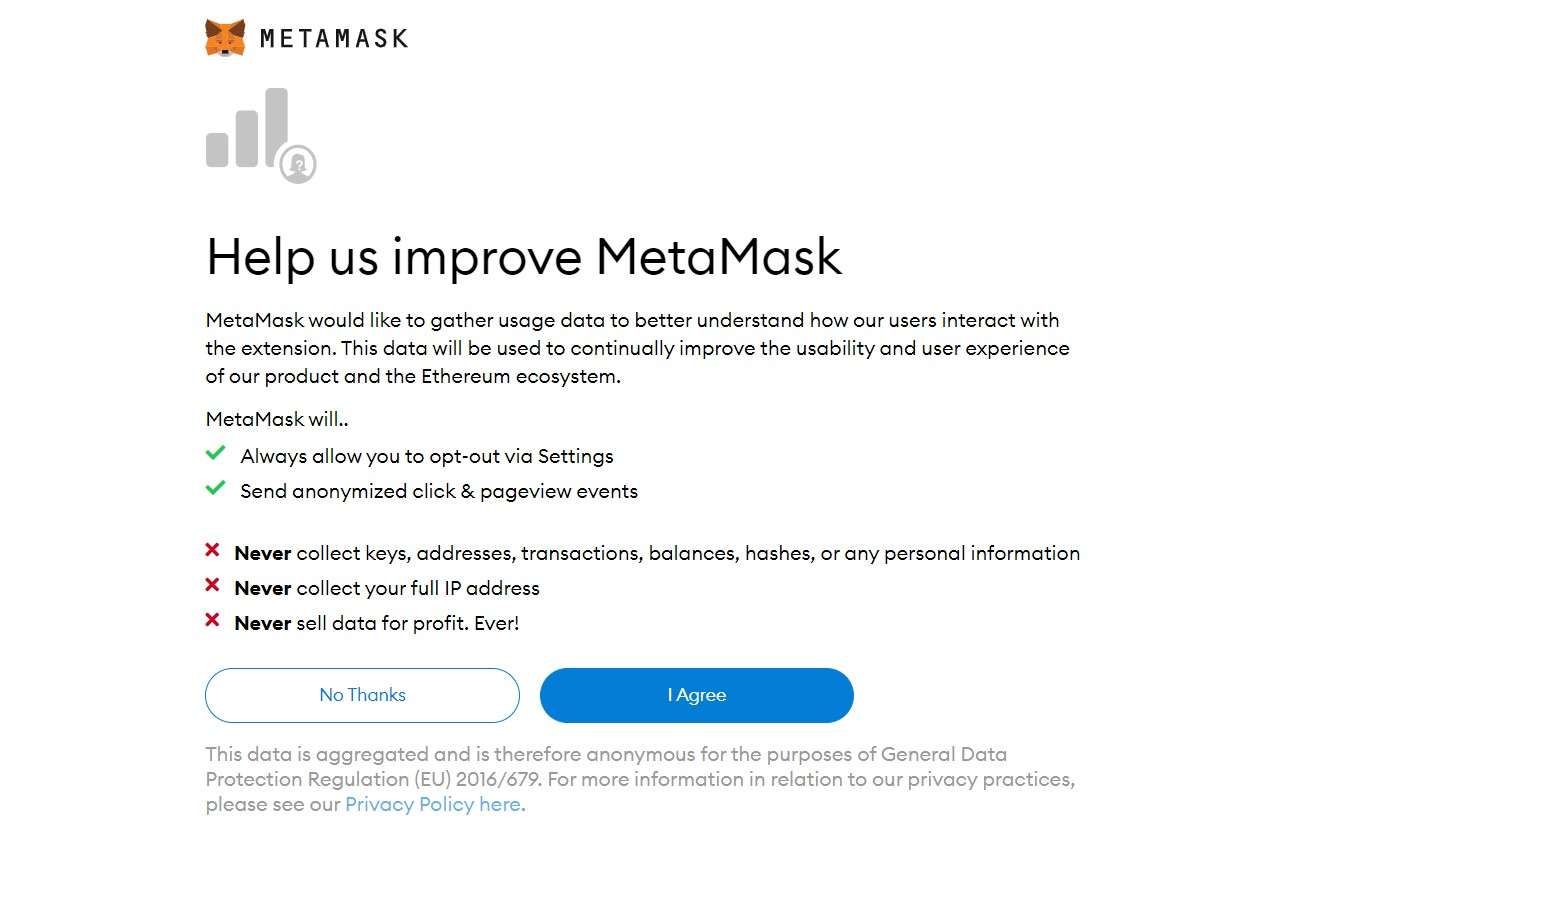 6. Improve Metamask